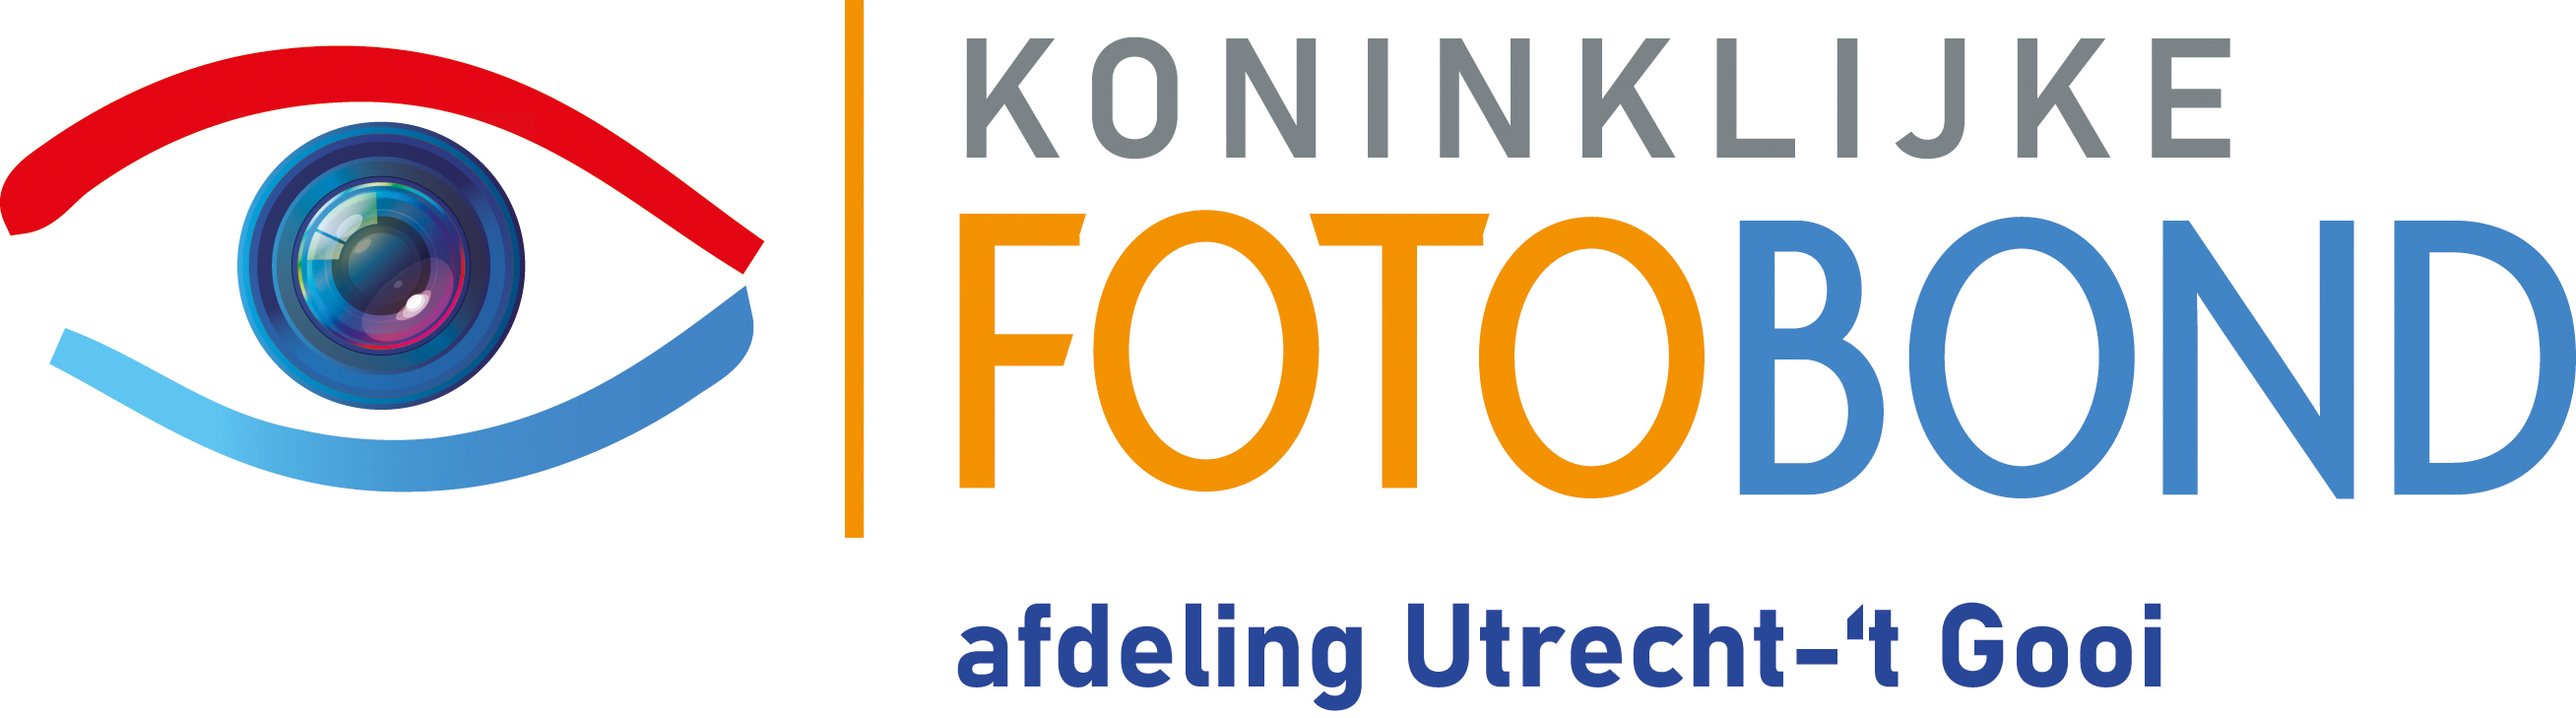 Logo Fotobond afdeling Utrecht-t Gooi RGB.jpg